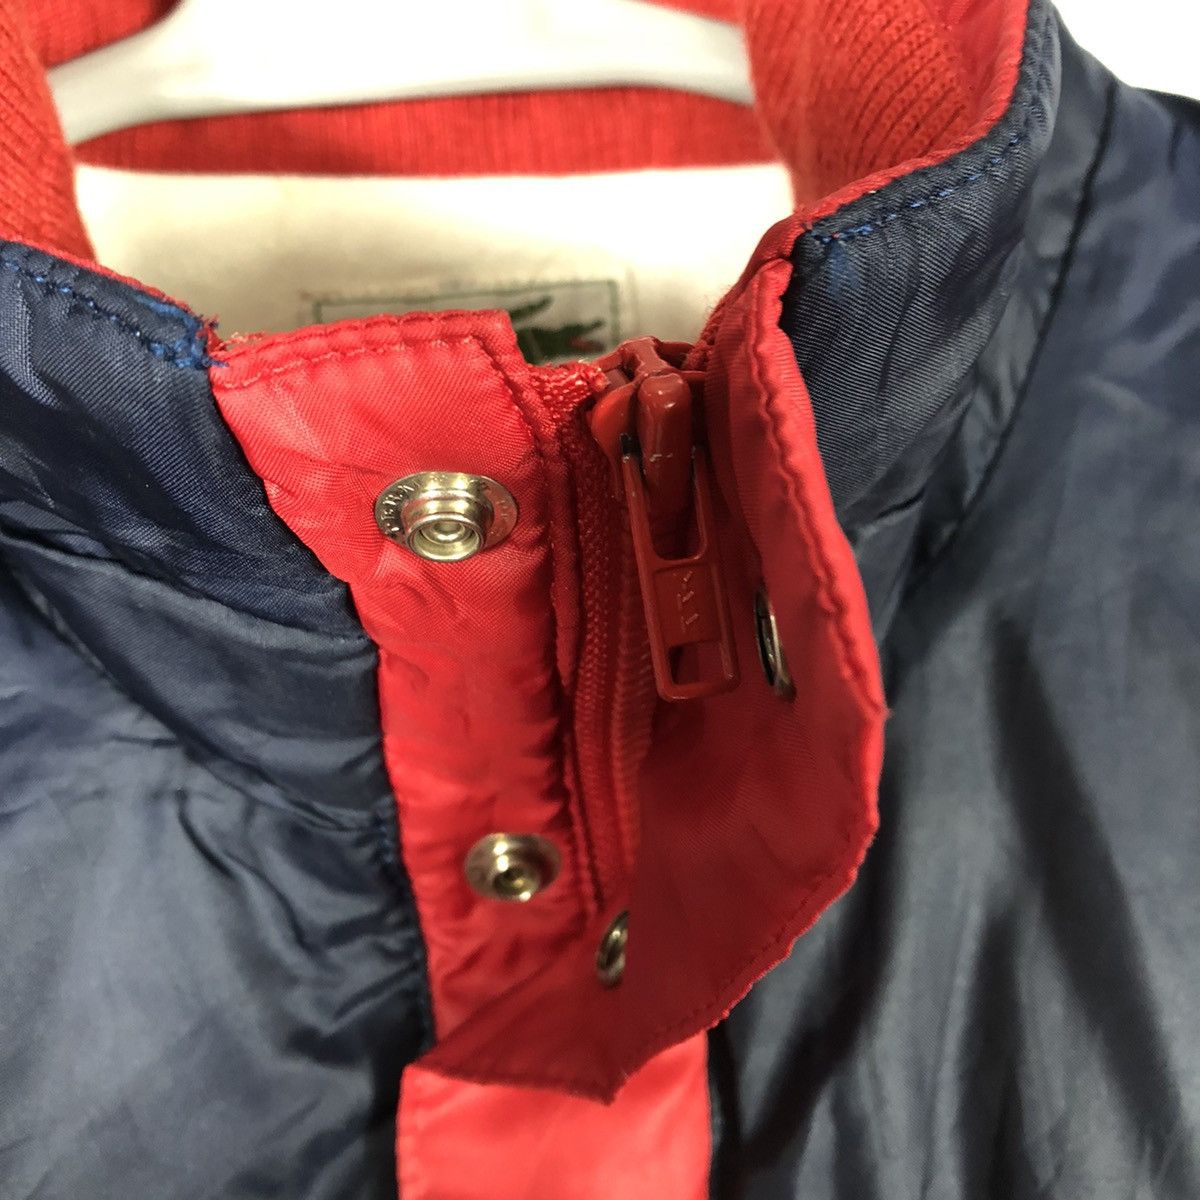 Vintage Vintage Lacoste Half Zipper Buttons Outdoor Winter Jacket Size US M / EU 48-50 / 2 - 11 Thumbnail